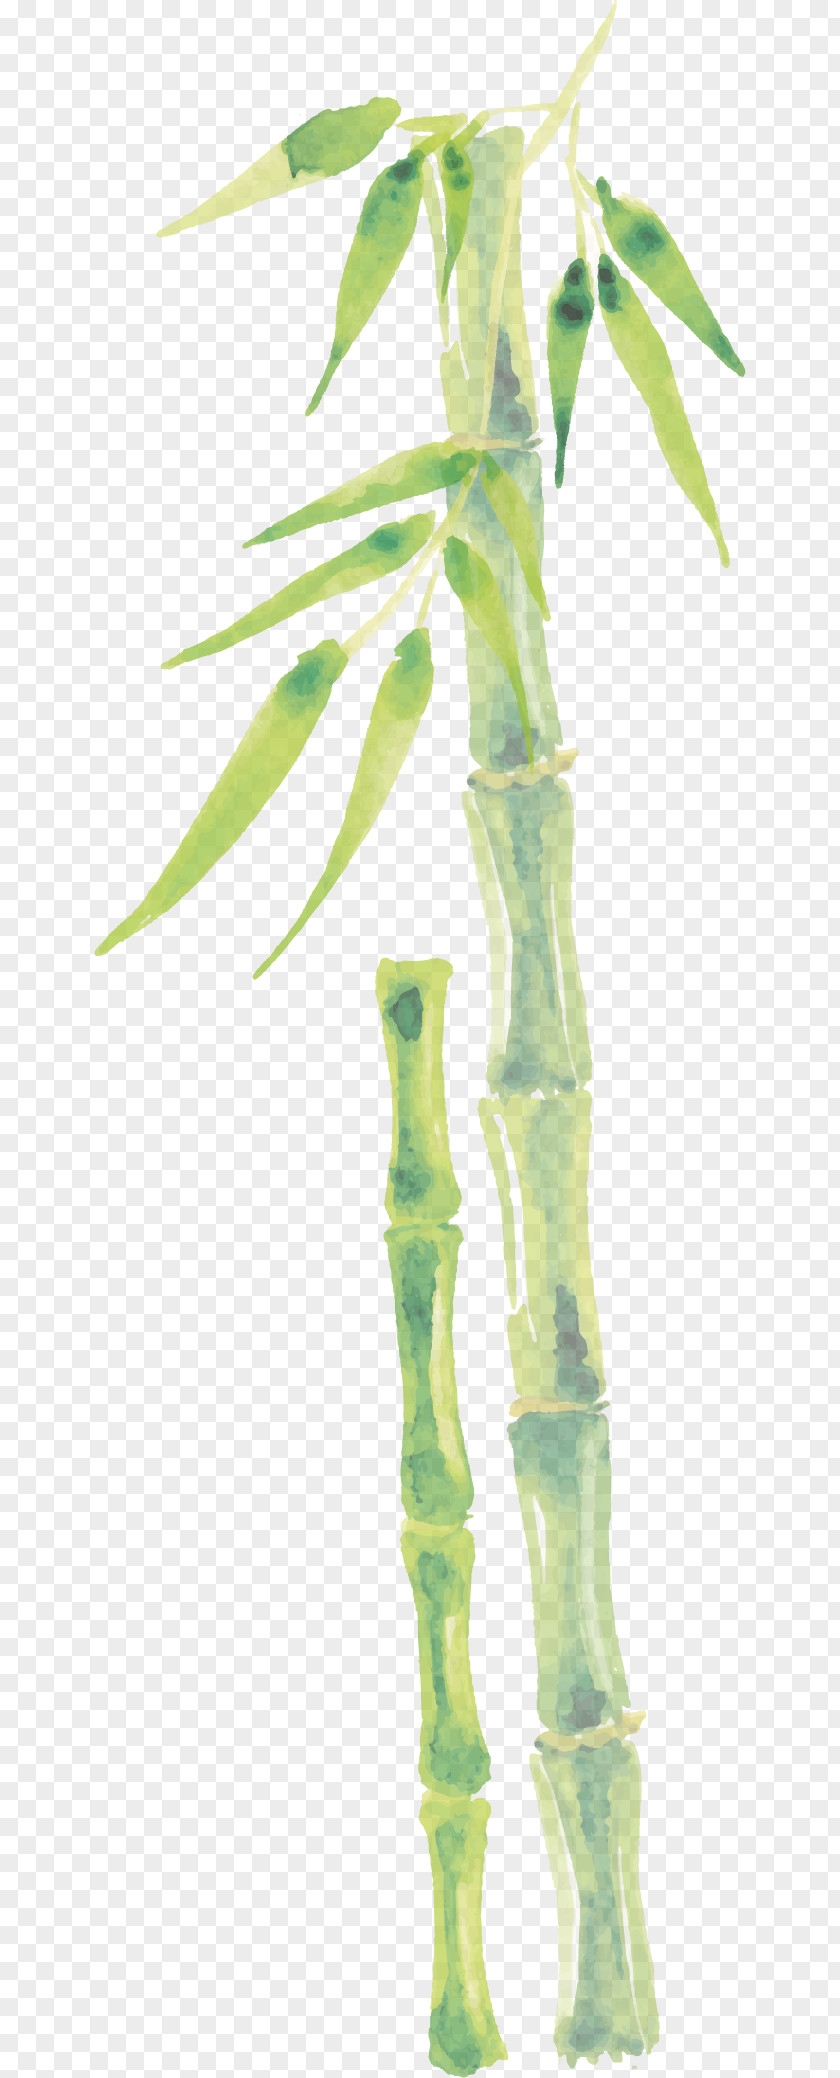 Cartoon Bamboo Vector Drawing Bamboe PNG